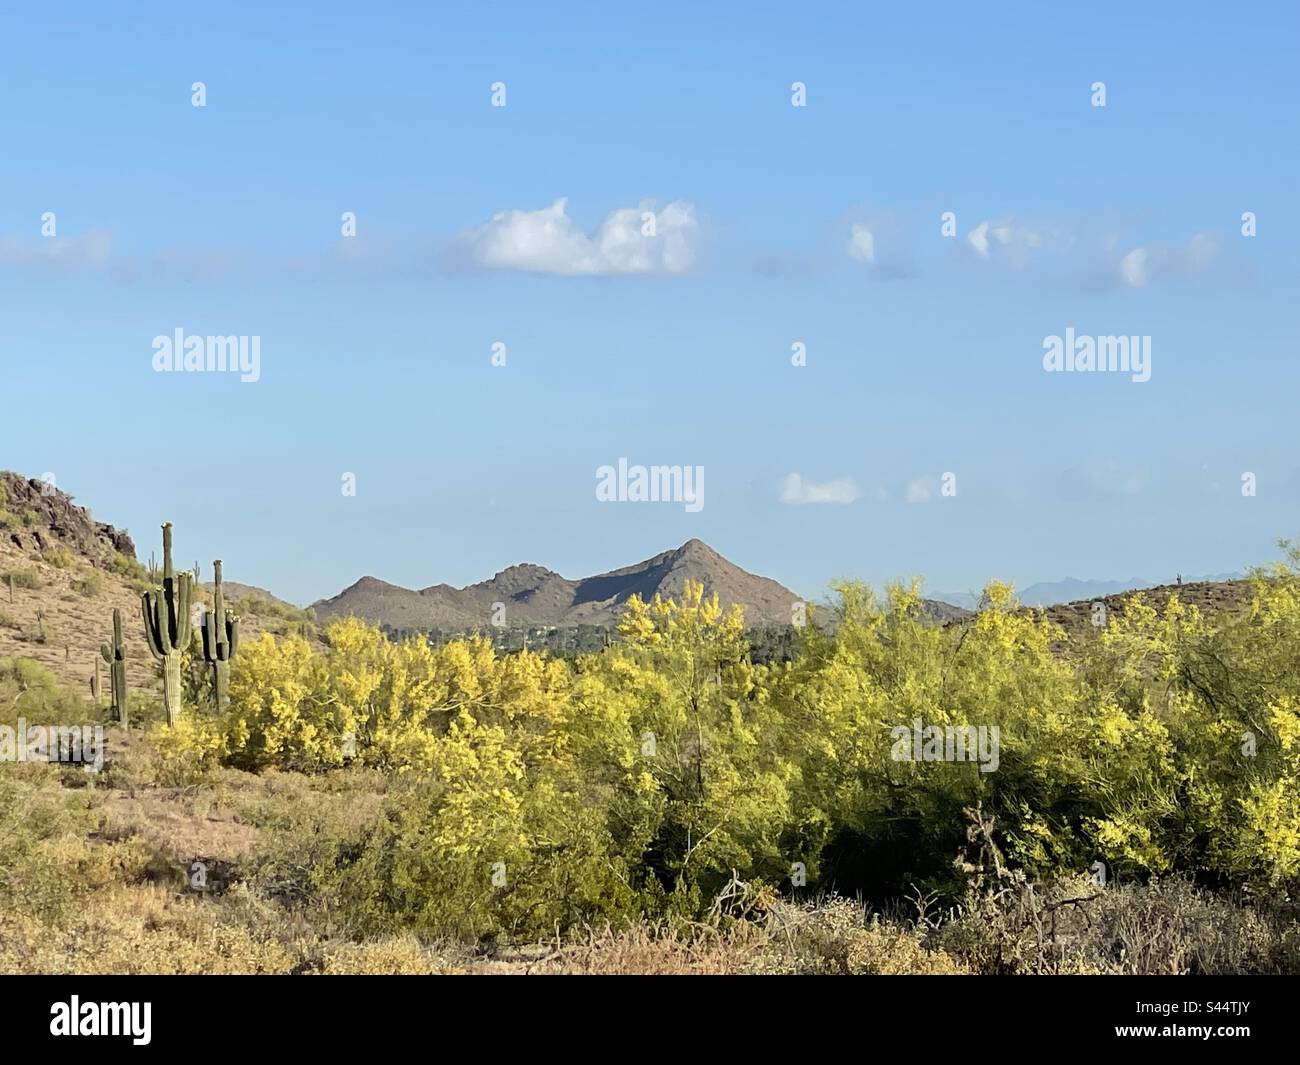 Palo Verde, désert de Sonoran, ciel bleu turquoise, nuages classiques, réserve de montagnes Phoenix, cactus Saguaro, lavage dans le désert, Arizona Banque D'Images